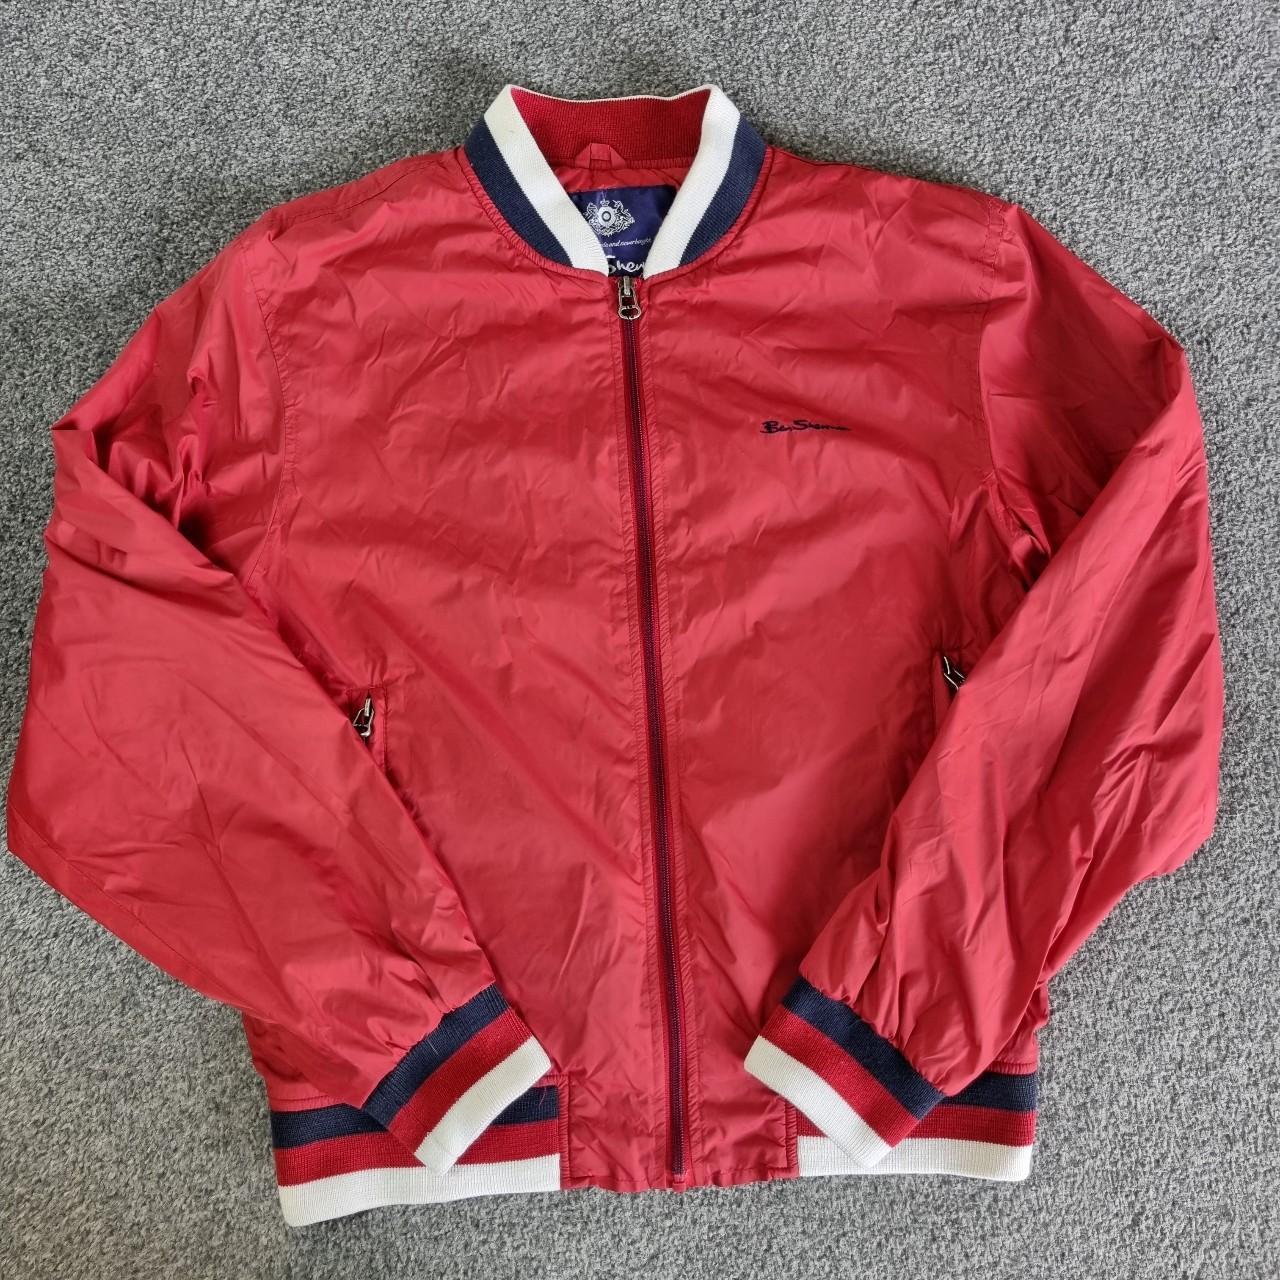 Mens Red Ben Sherman Windbreaker Jacket Size UK... - Depop